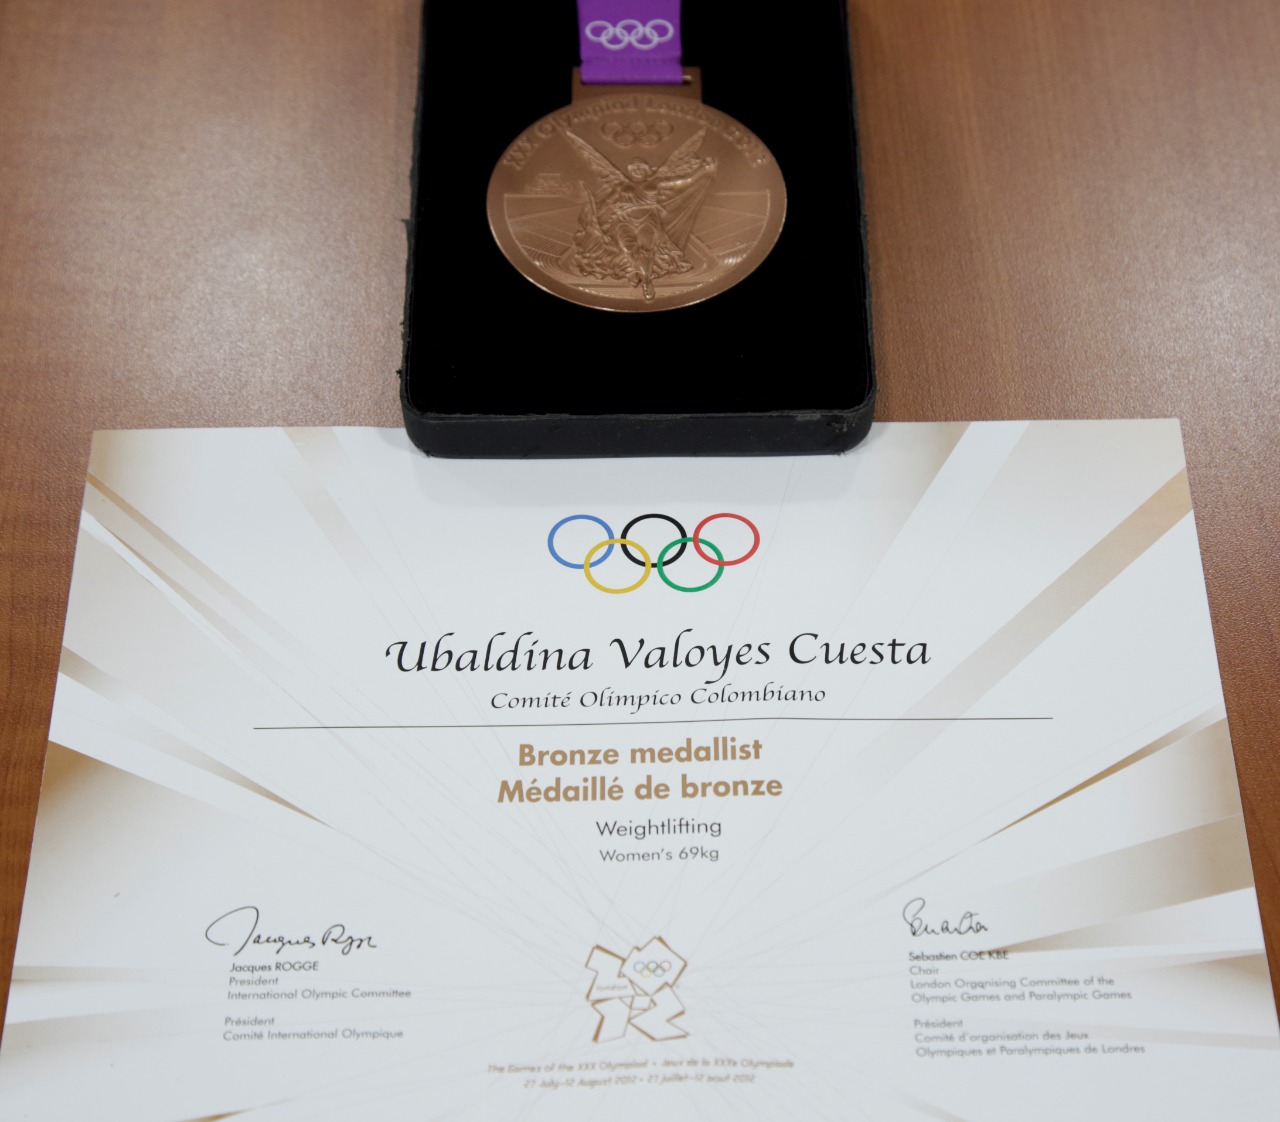 La medalla olímpica de bronce y el diploma correspondiente a Ubaldina Valoyes.